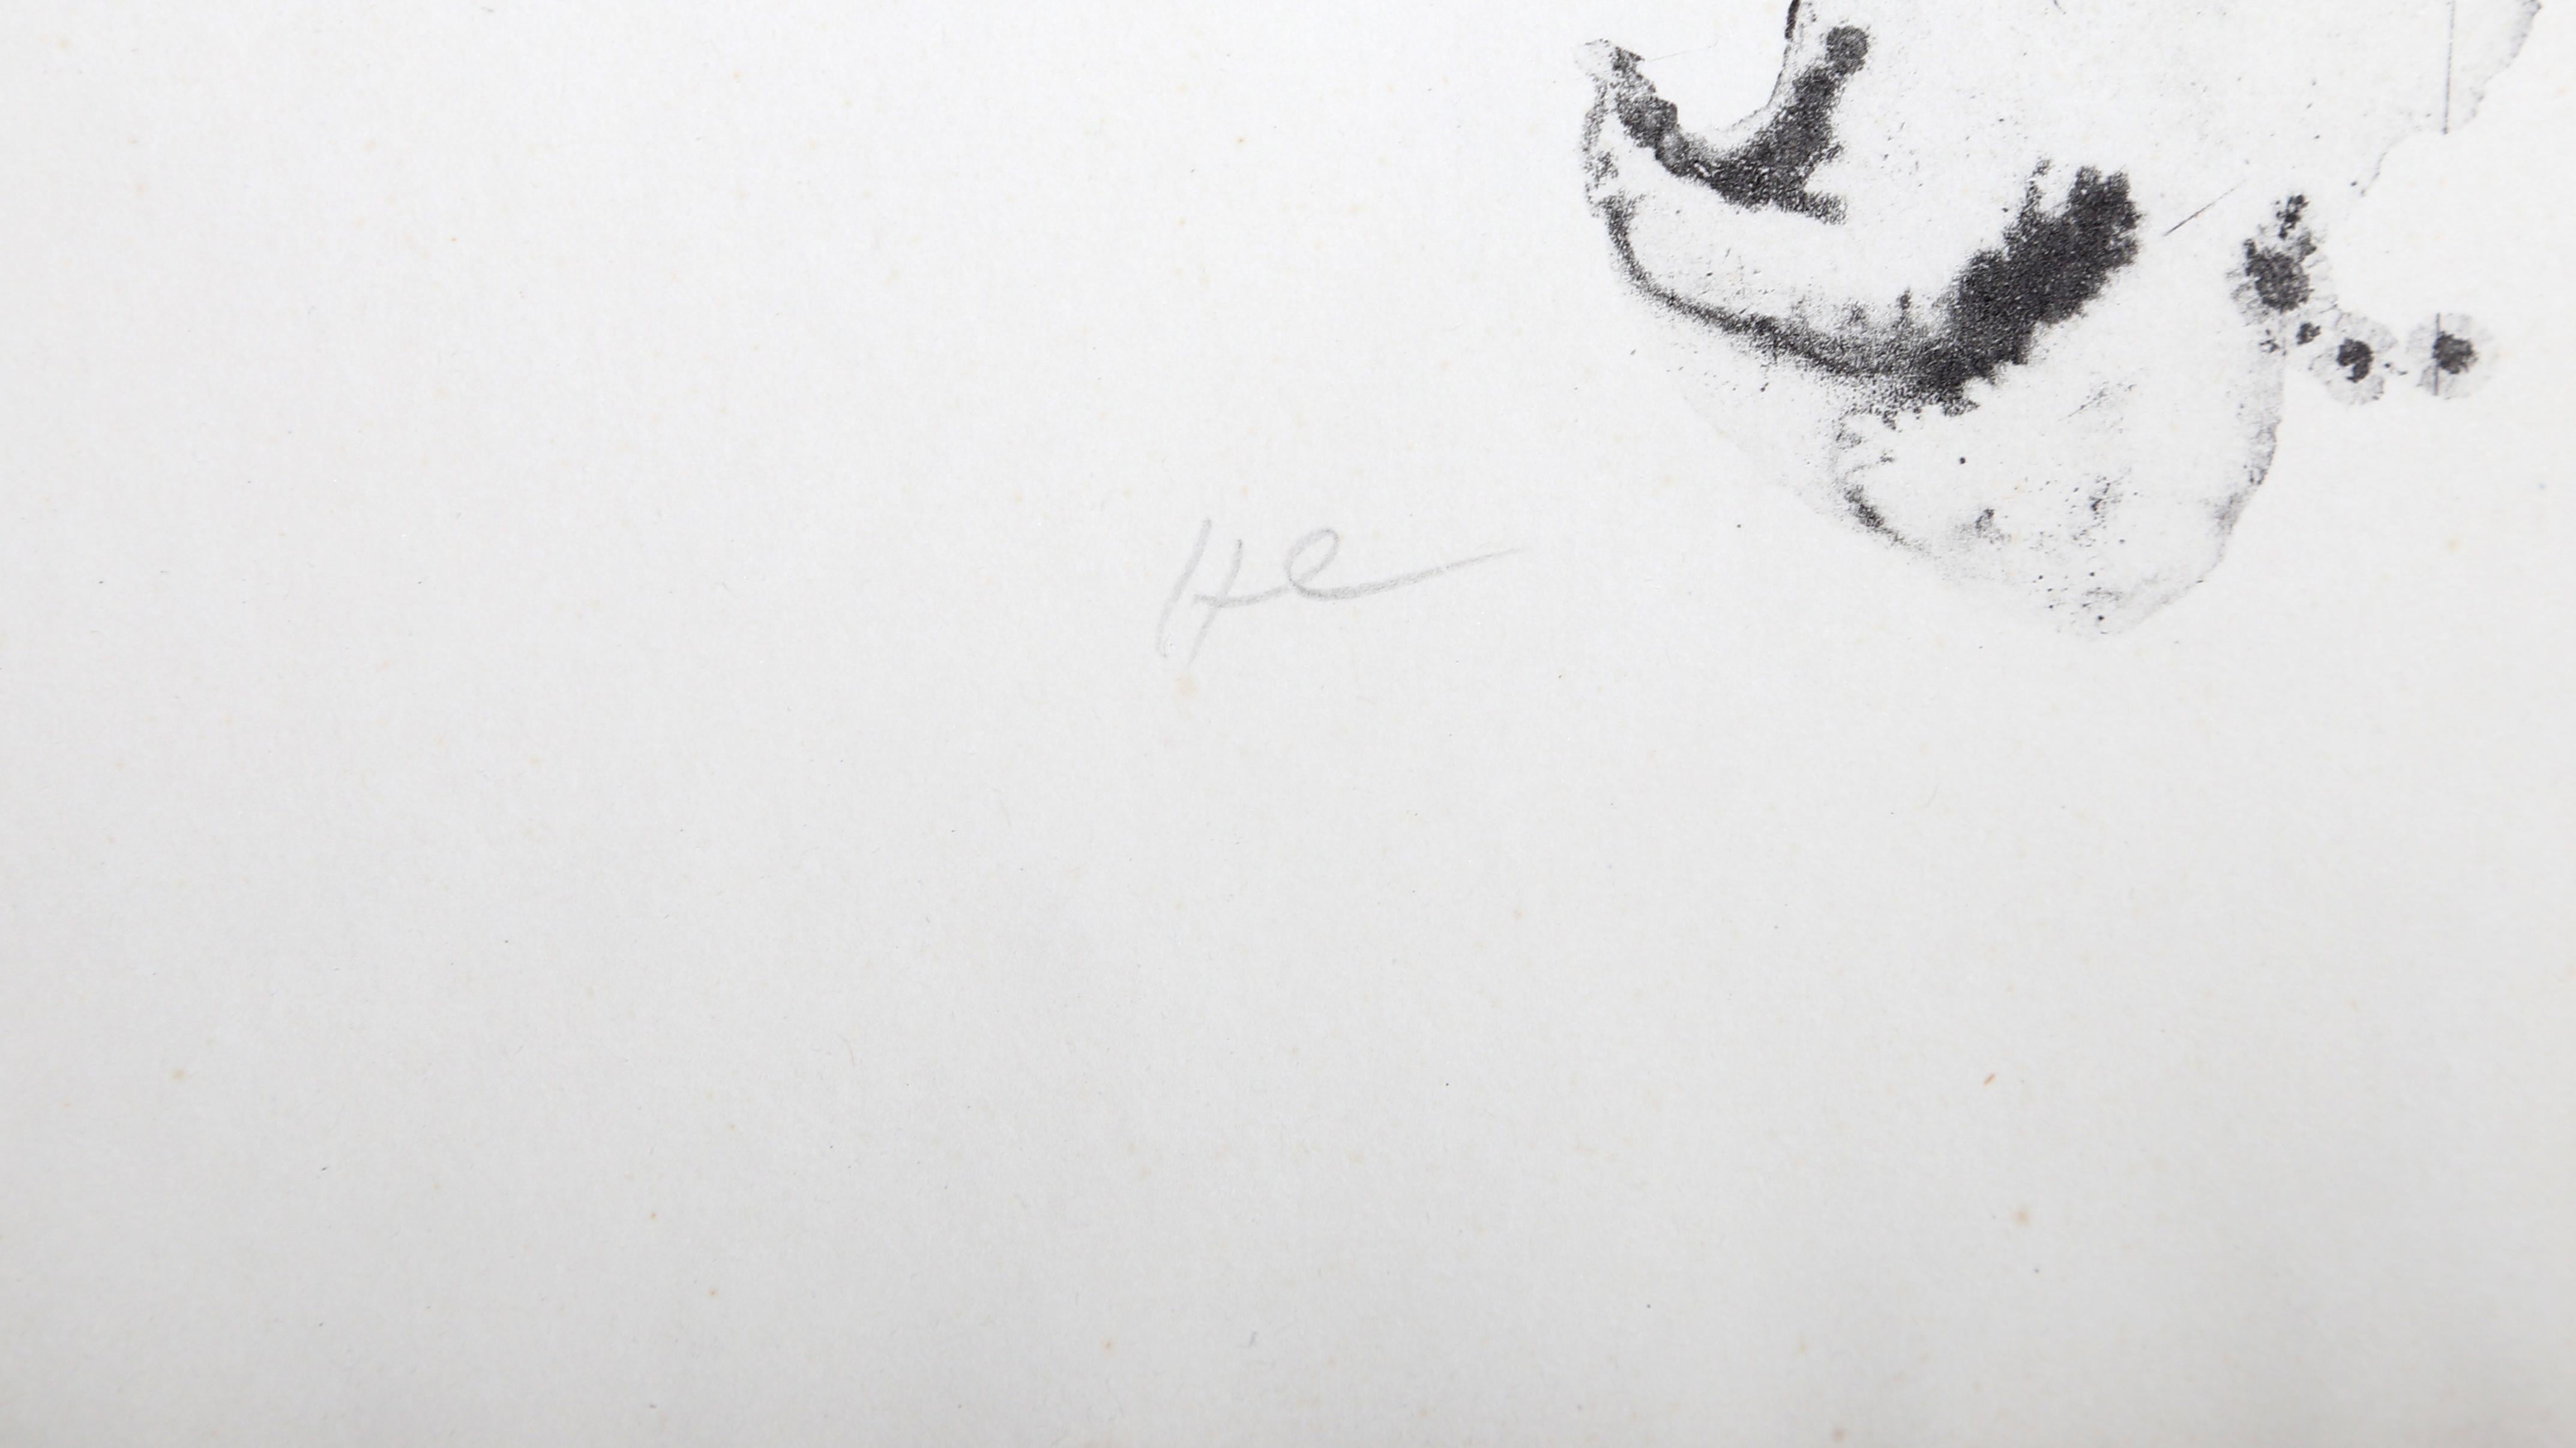 Joan Miro war ein katalanischer Maler, der abstrakte Kunst mit surrealistischer Fantasie verband und mit seinen charakteristischen biomorphen Formen und geometrischen Gestalten eine einzigartige Identität schuf. Der Titel dieser Radierung bedeutet